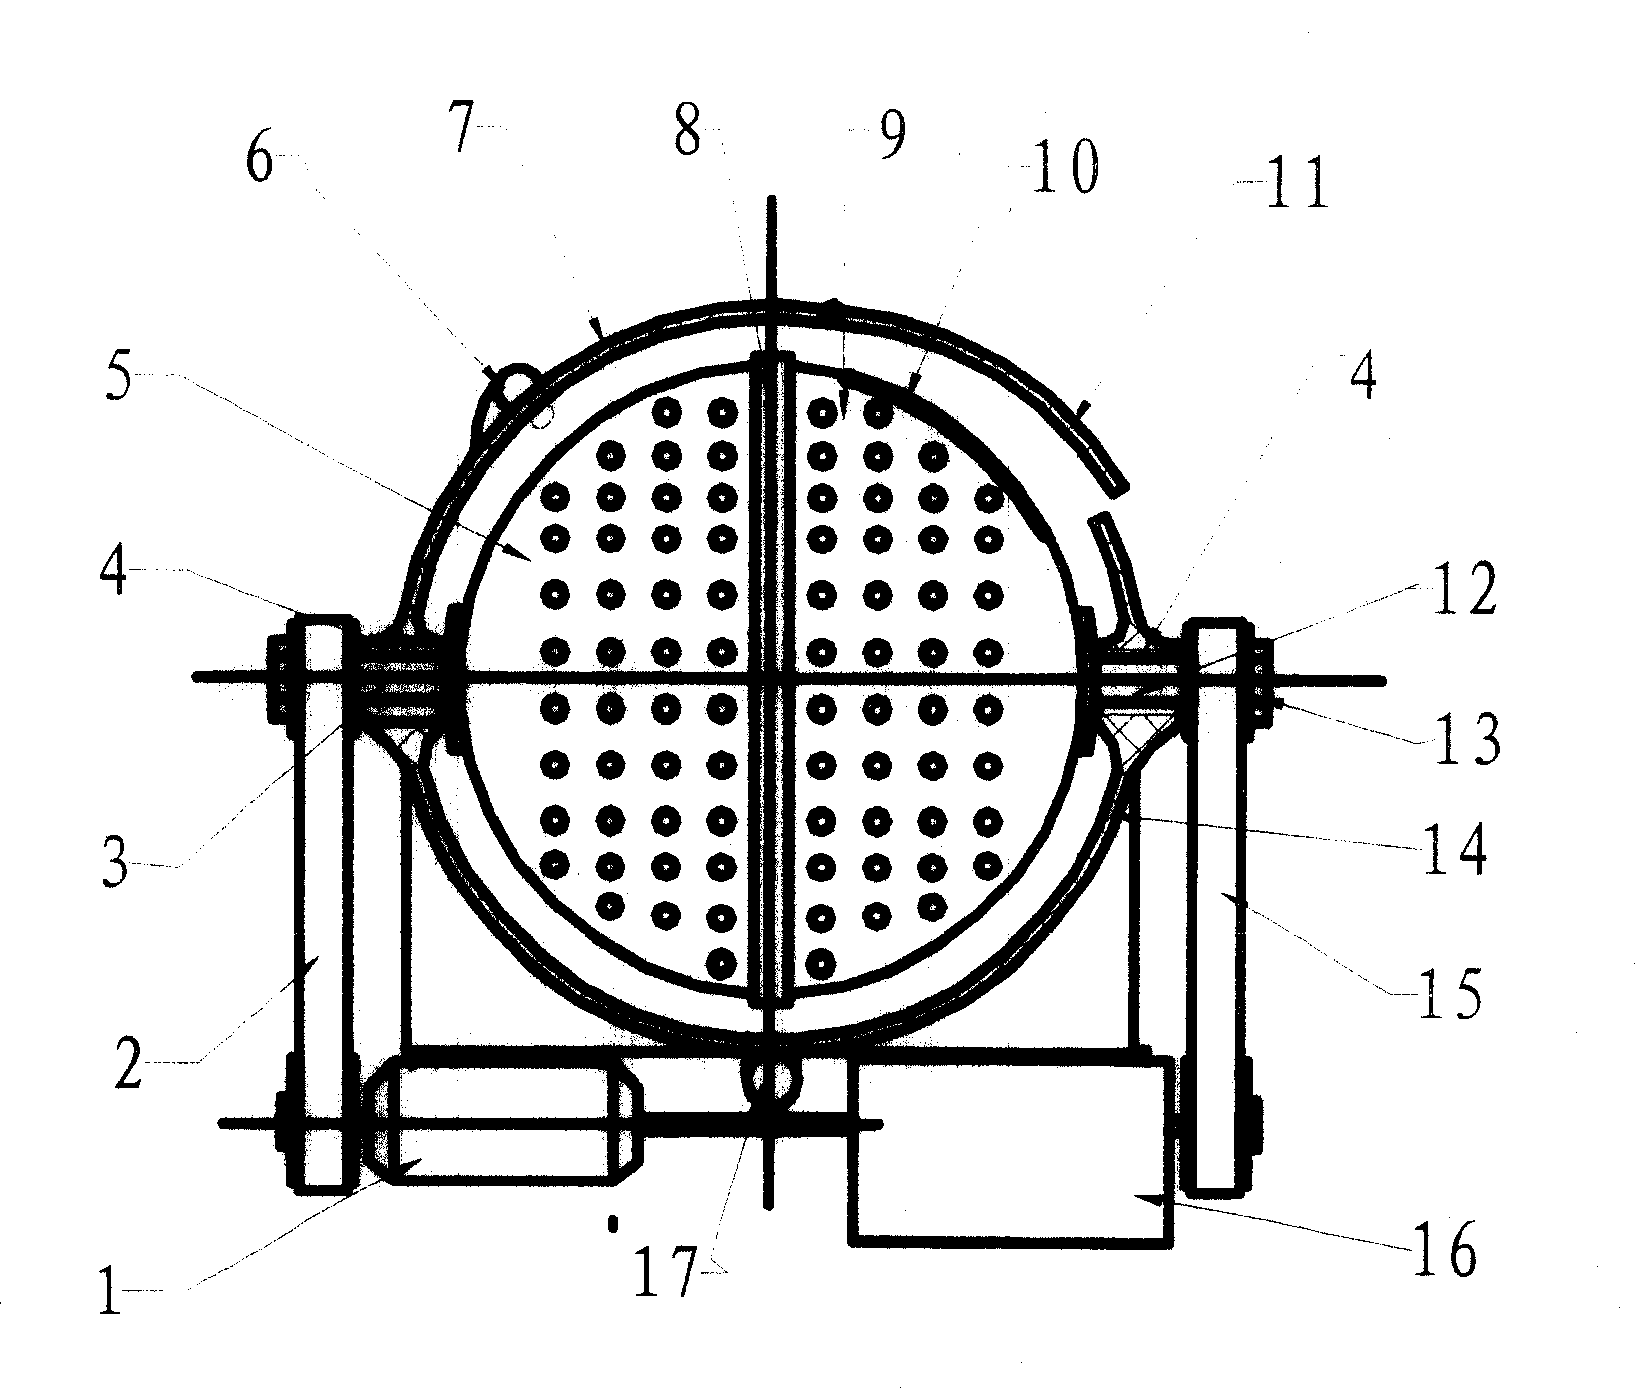 Ball-shape drum washing machine